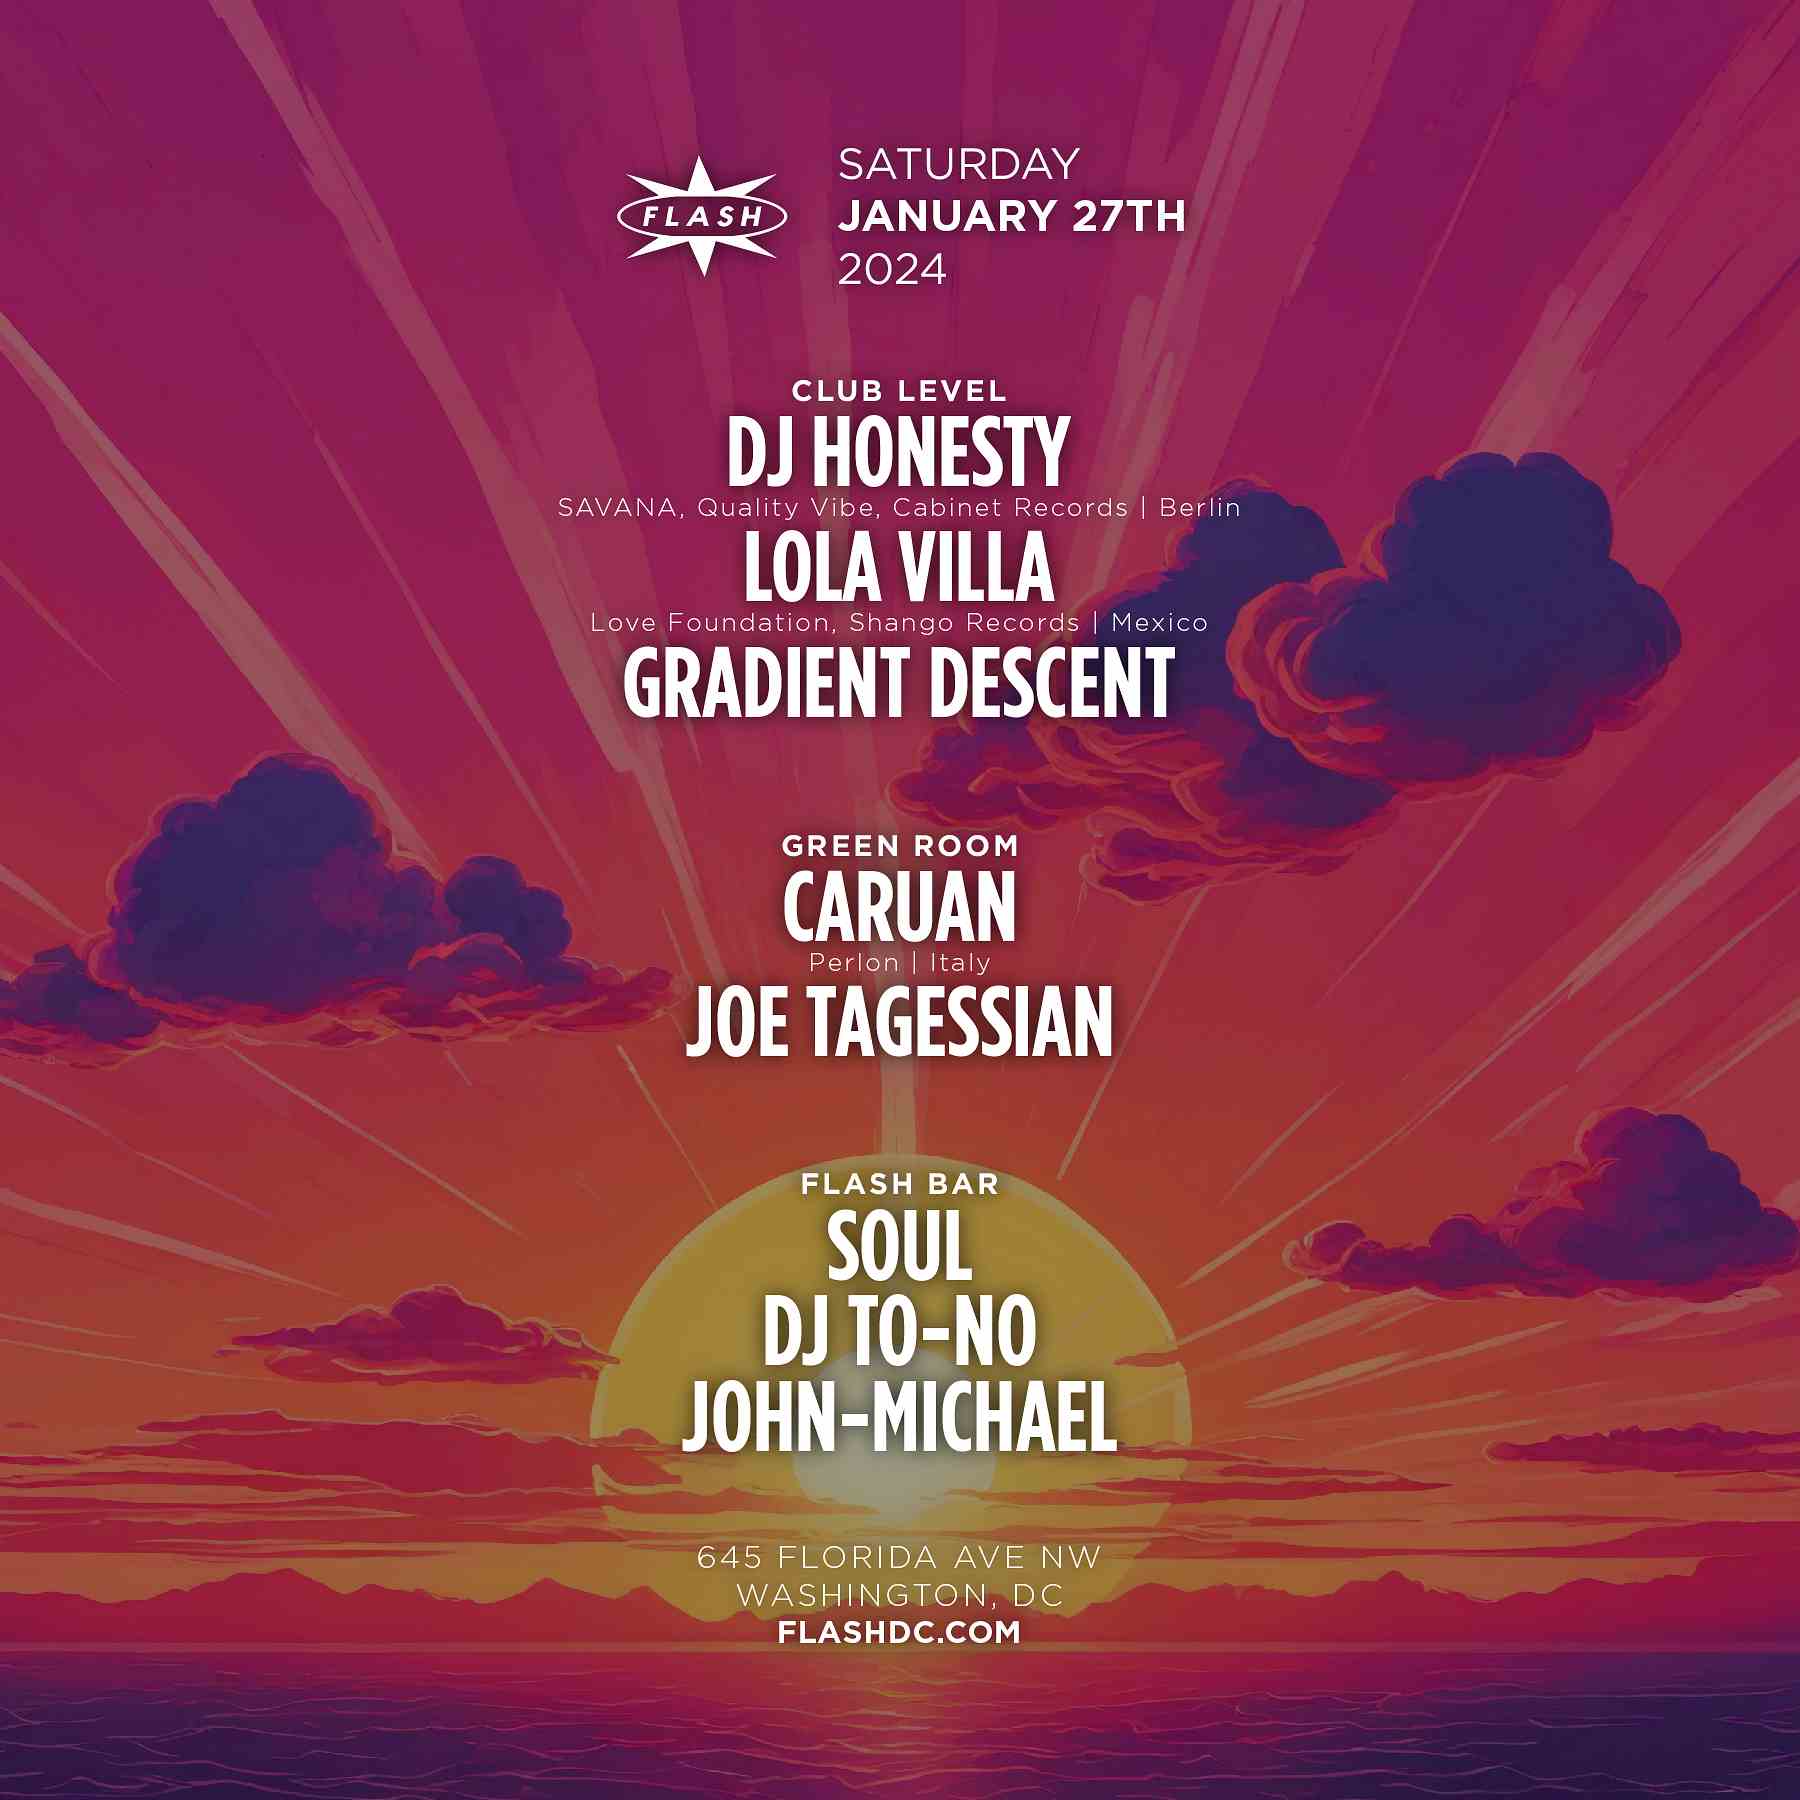 DJ Honesty - Lola Villa event flyer